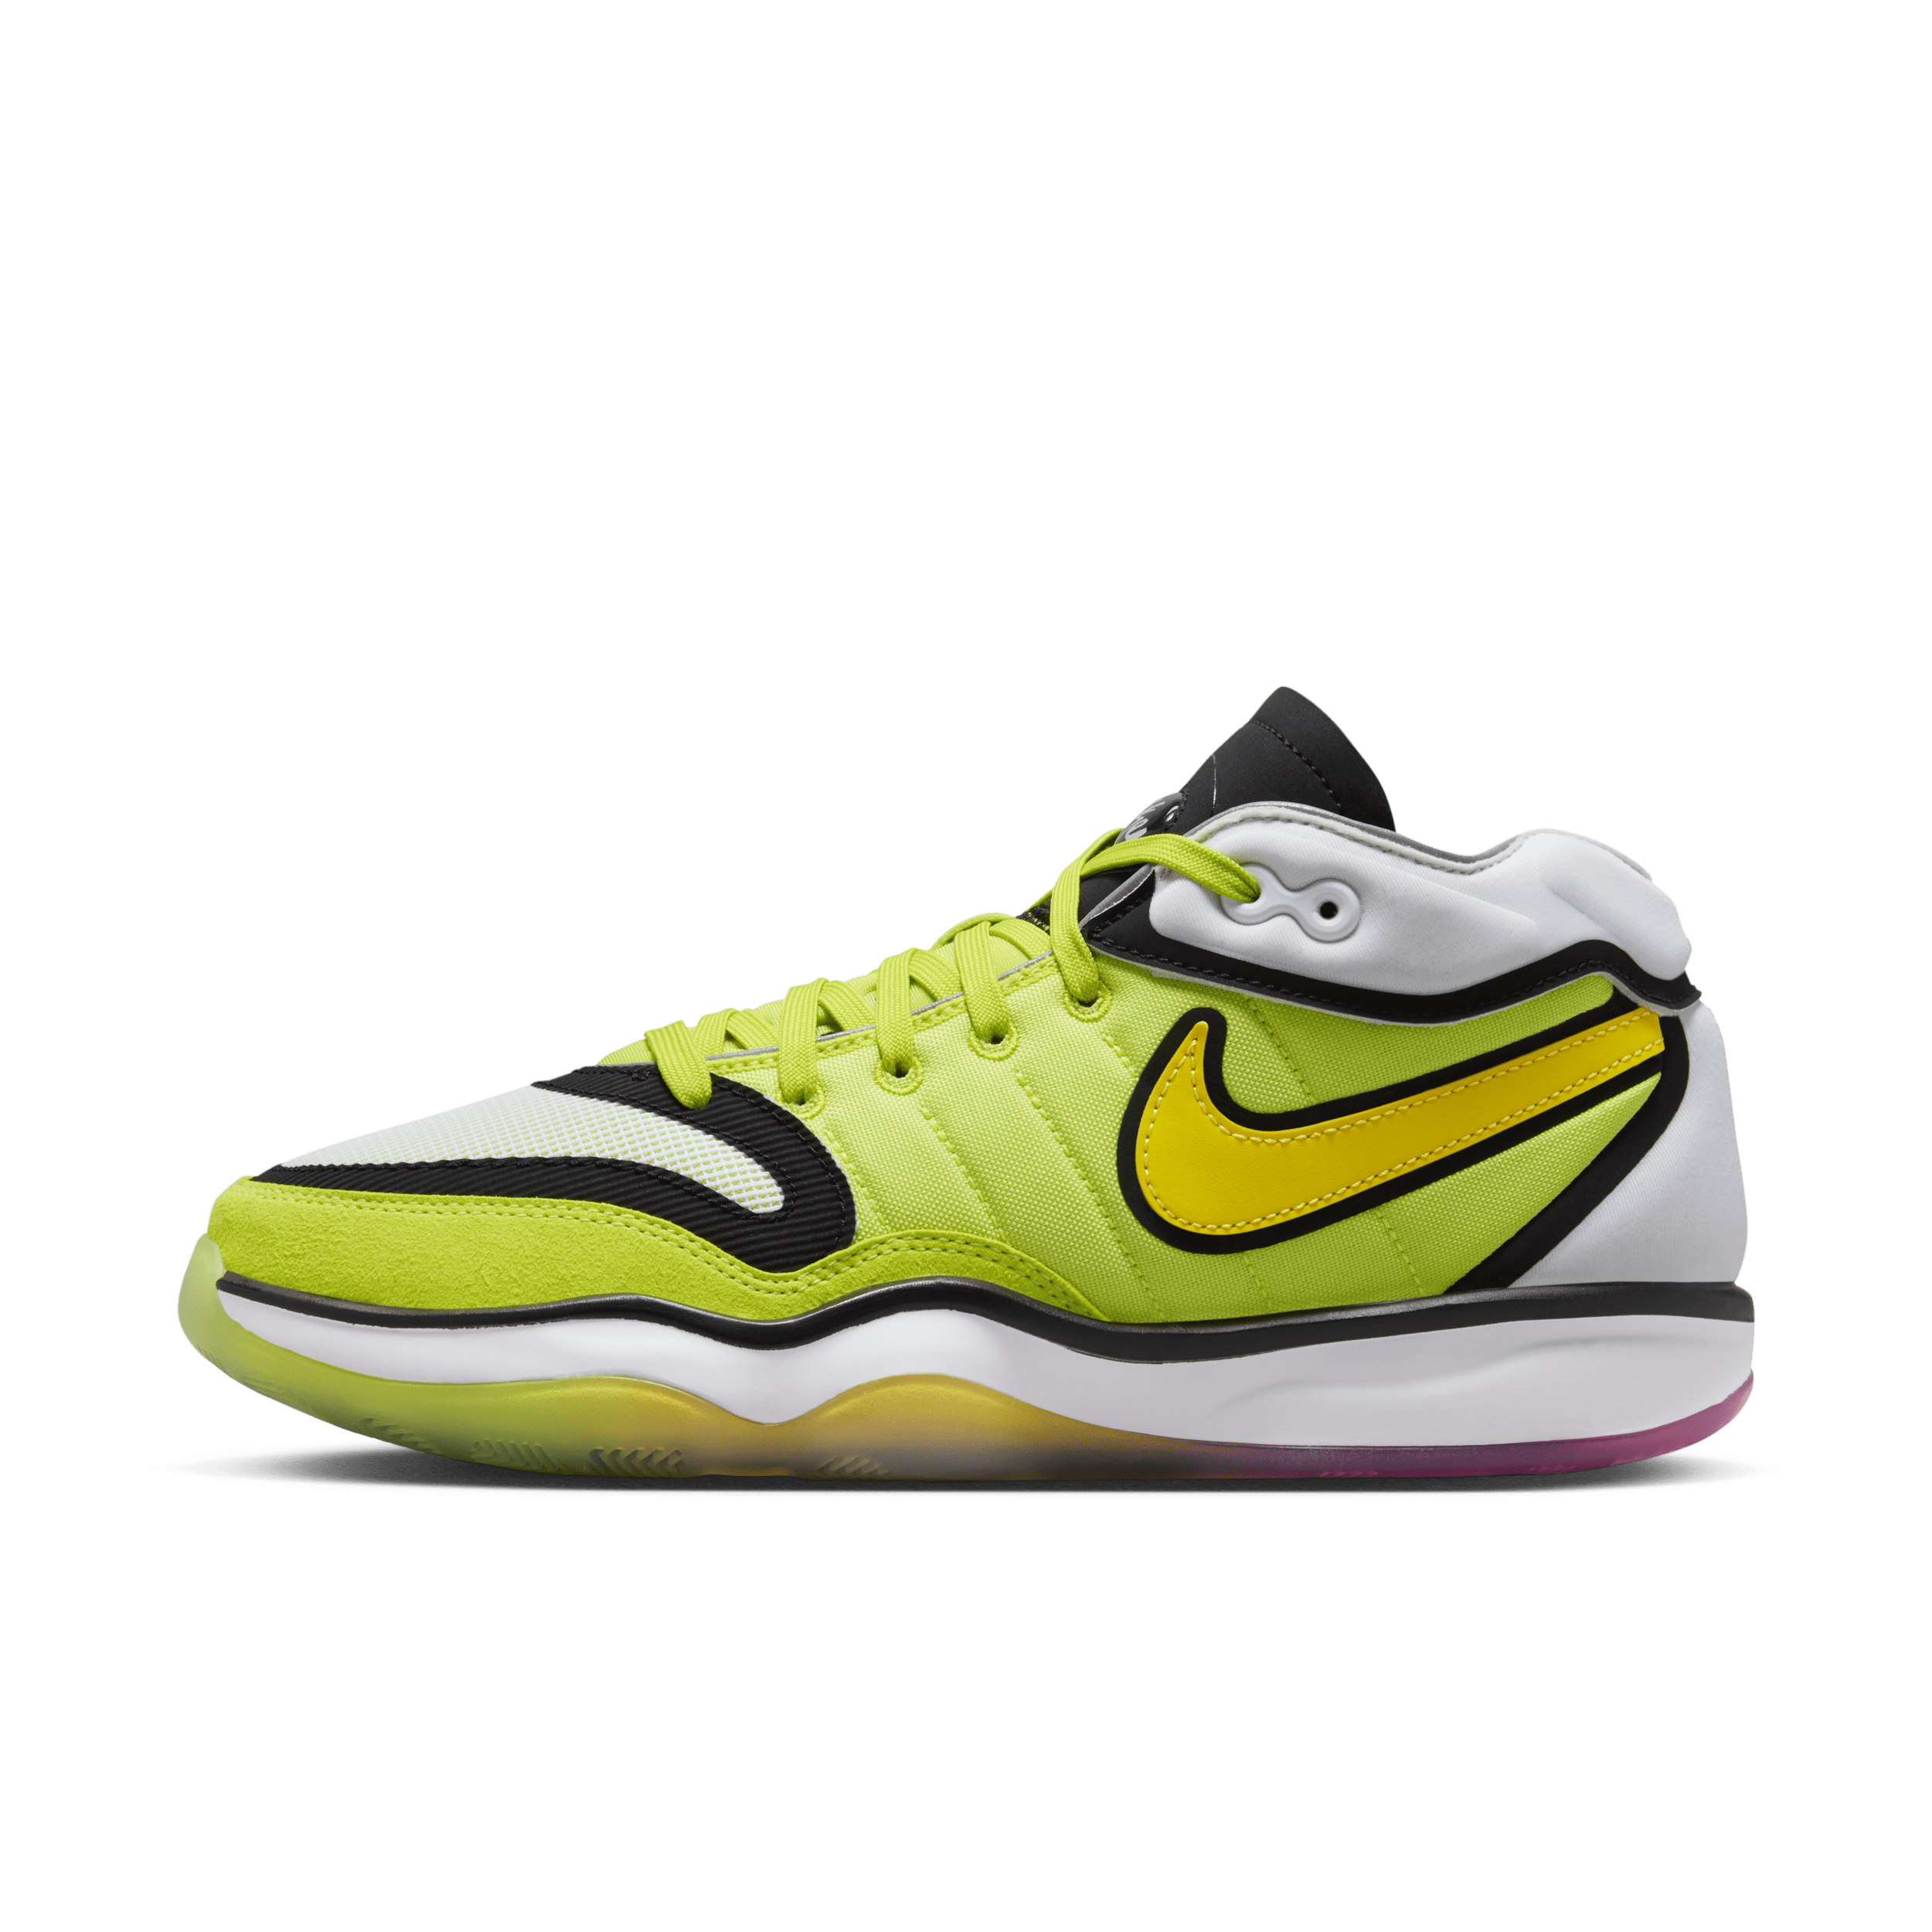 Nike G.T. Hustle 2 basketbalschoenen - Groen